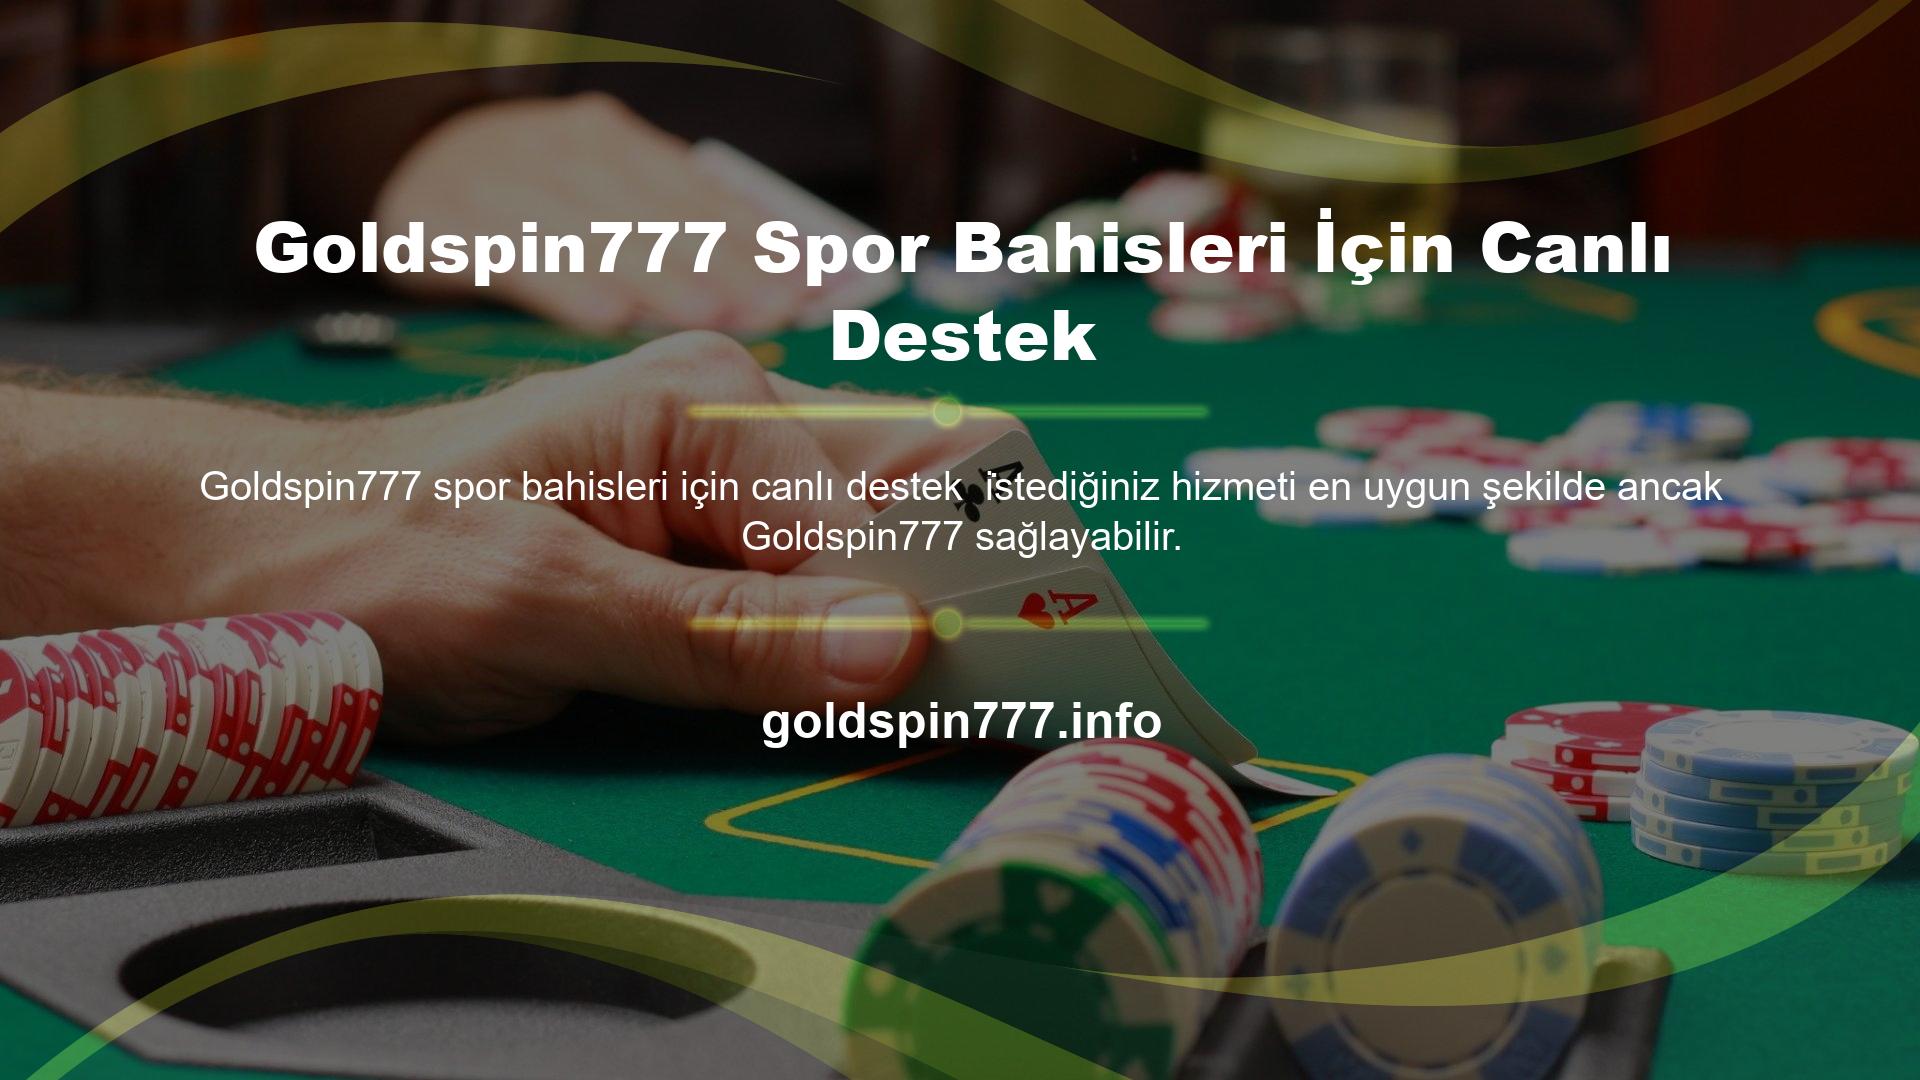 Canlı bahis oynamayı seven bahisçilerin bir numaralı tercihi oldukça yetkin bir site olan Goldspin777